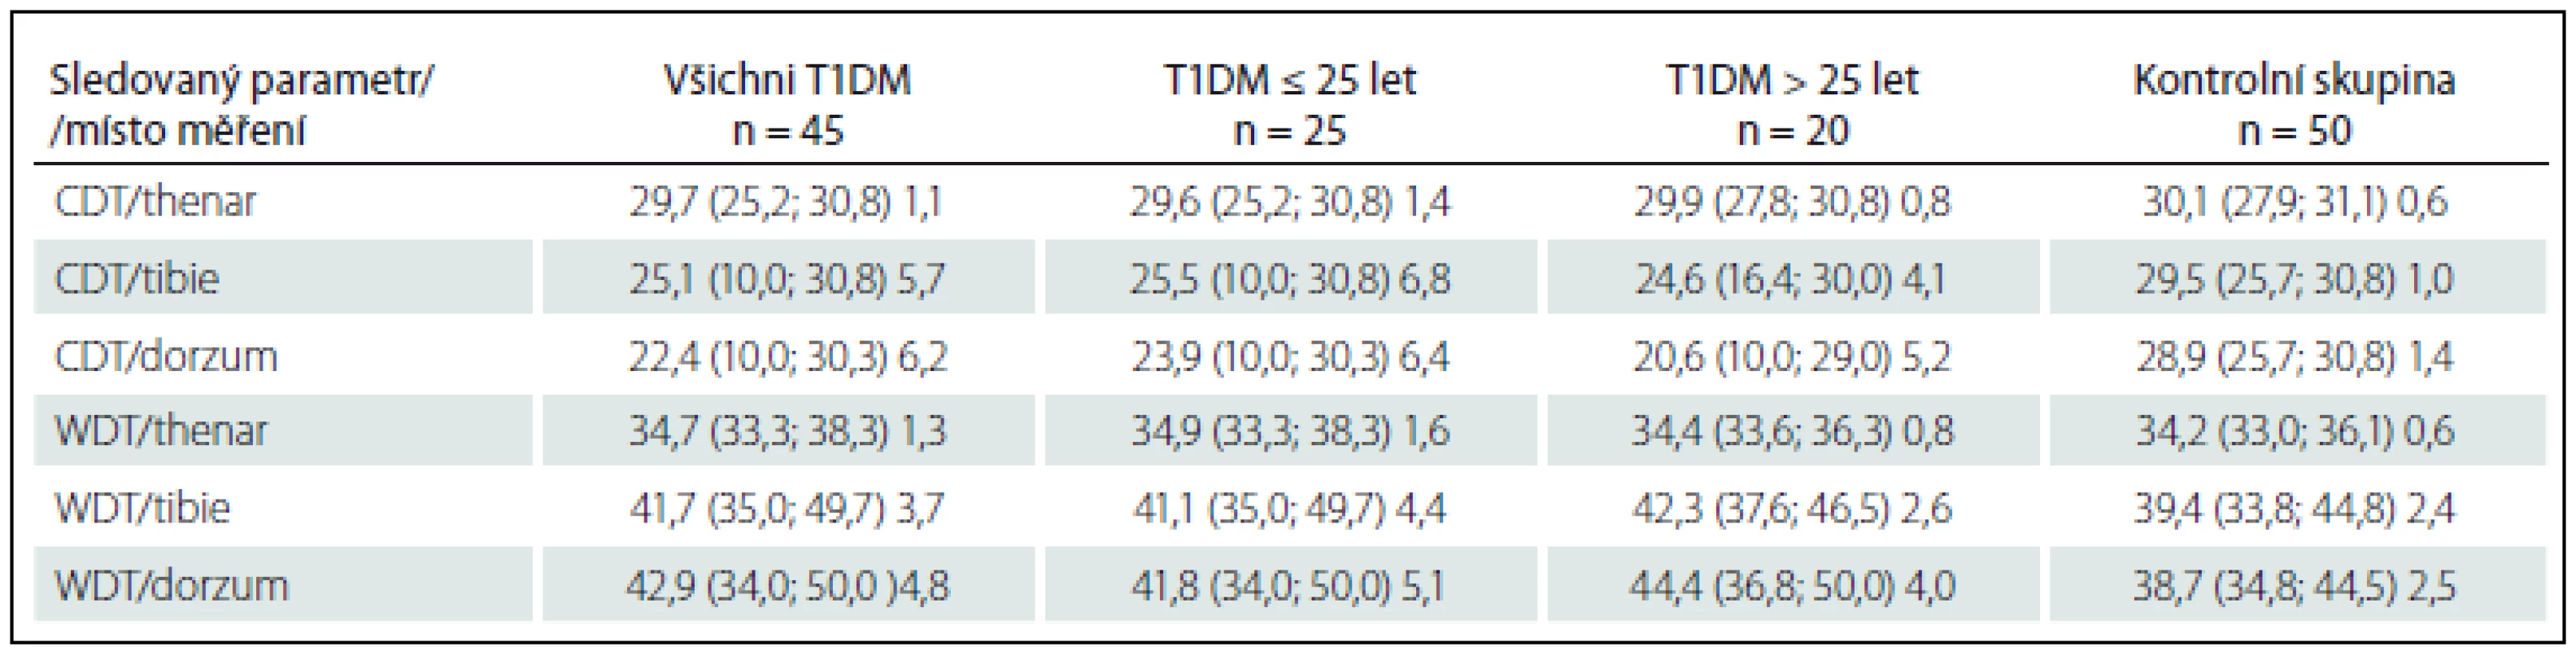 Hodnoty jednotlivých termických prahů u diabetiků a kontrolní skupiny.
Hodnoty uvedeny jako μ (min.; max.), SD v jednotkách °C a jsou zaokrouhleny na jedno desetinné místo.